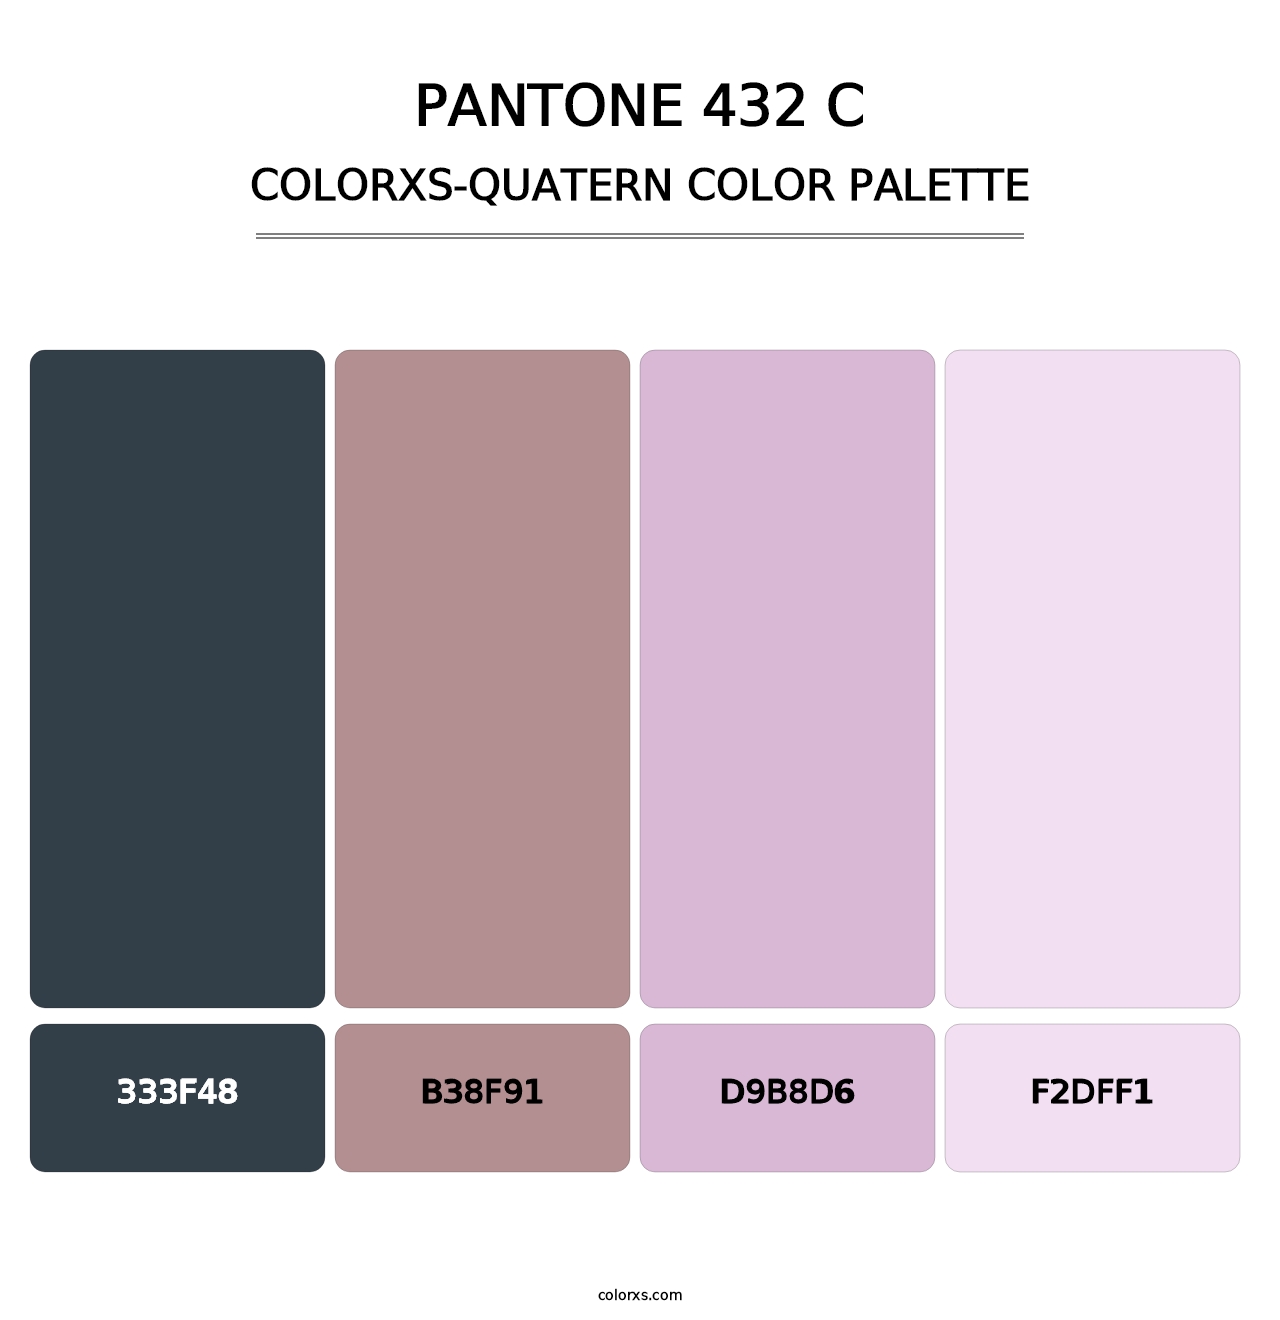 PANTONE 432 C - Colorxs Quatern Palette